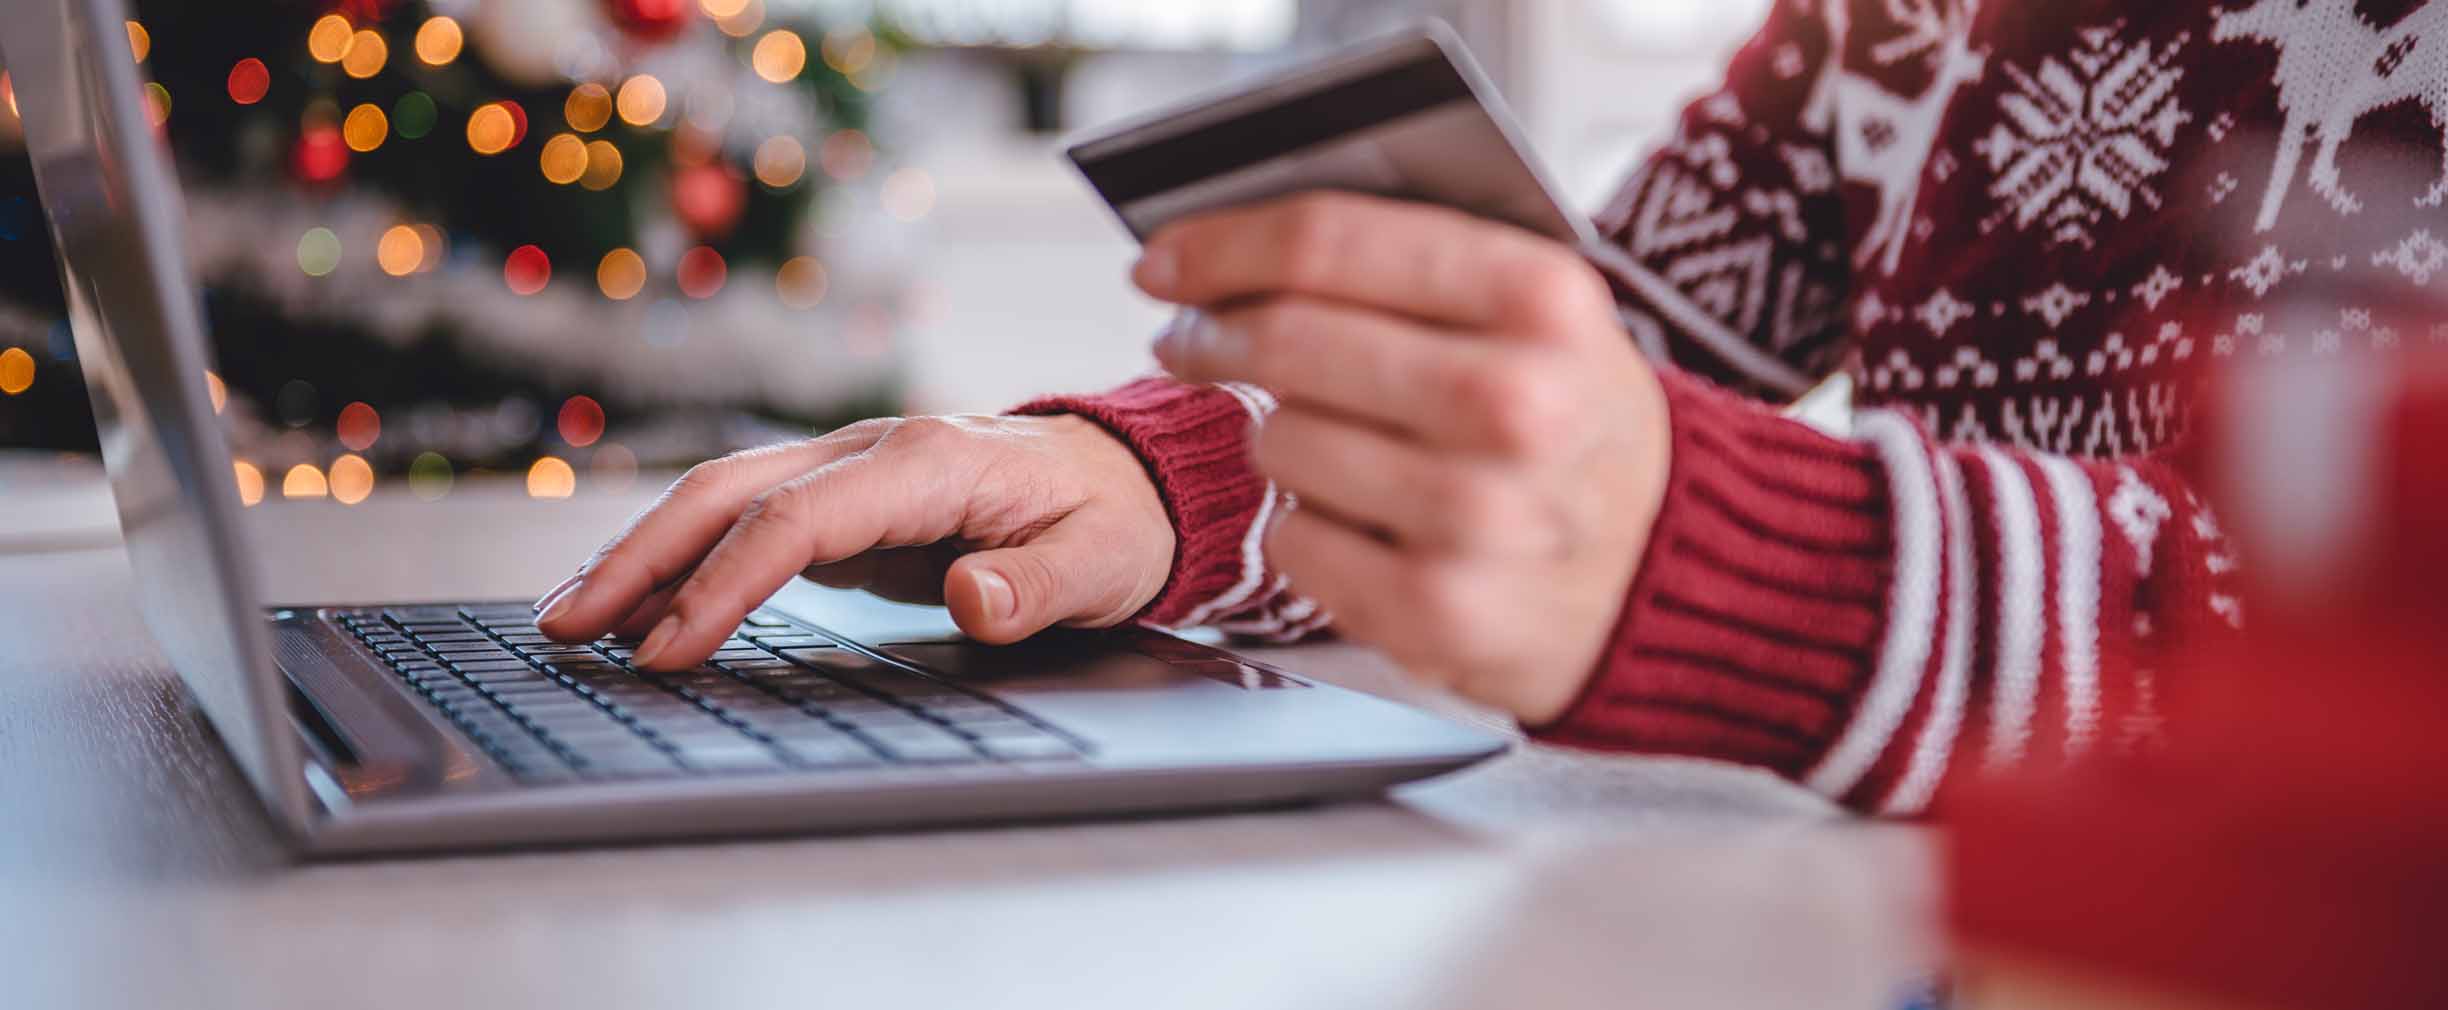 mujer con tarjeta de crédito en la mano comprando por Internet durante las fiestas